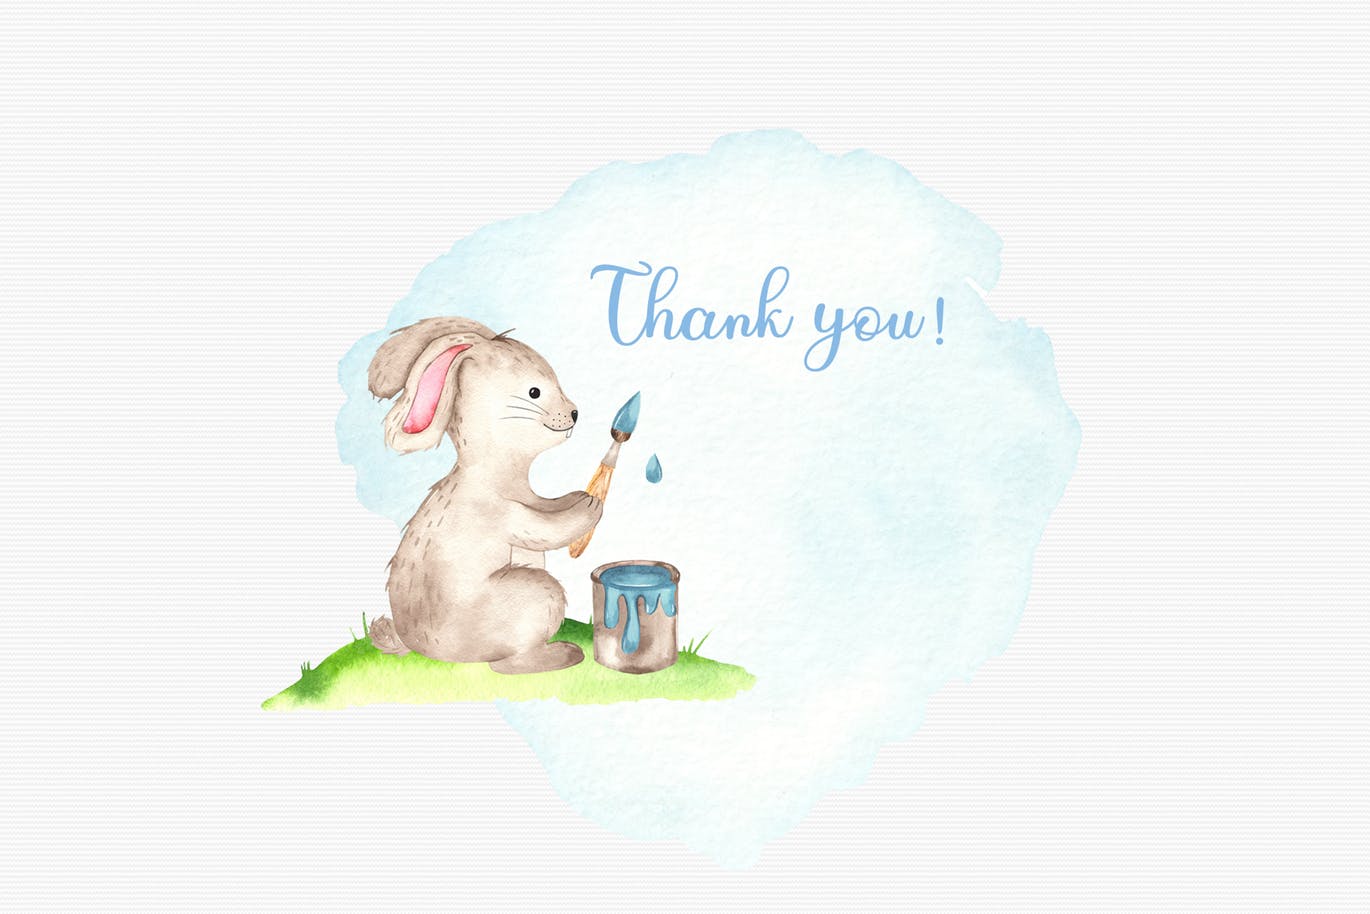 复活节兔子水彩手绘素材套装 Watercolor Easter Bunny collection插图(9)